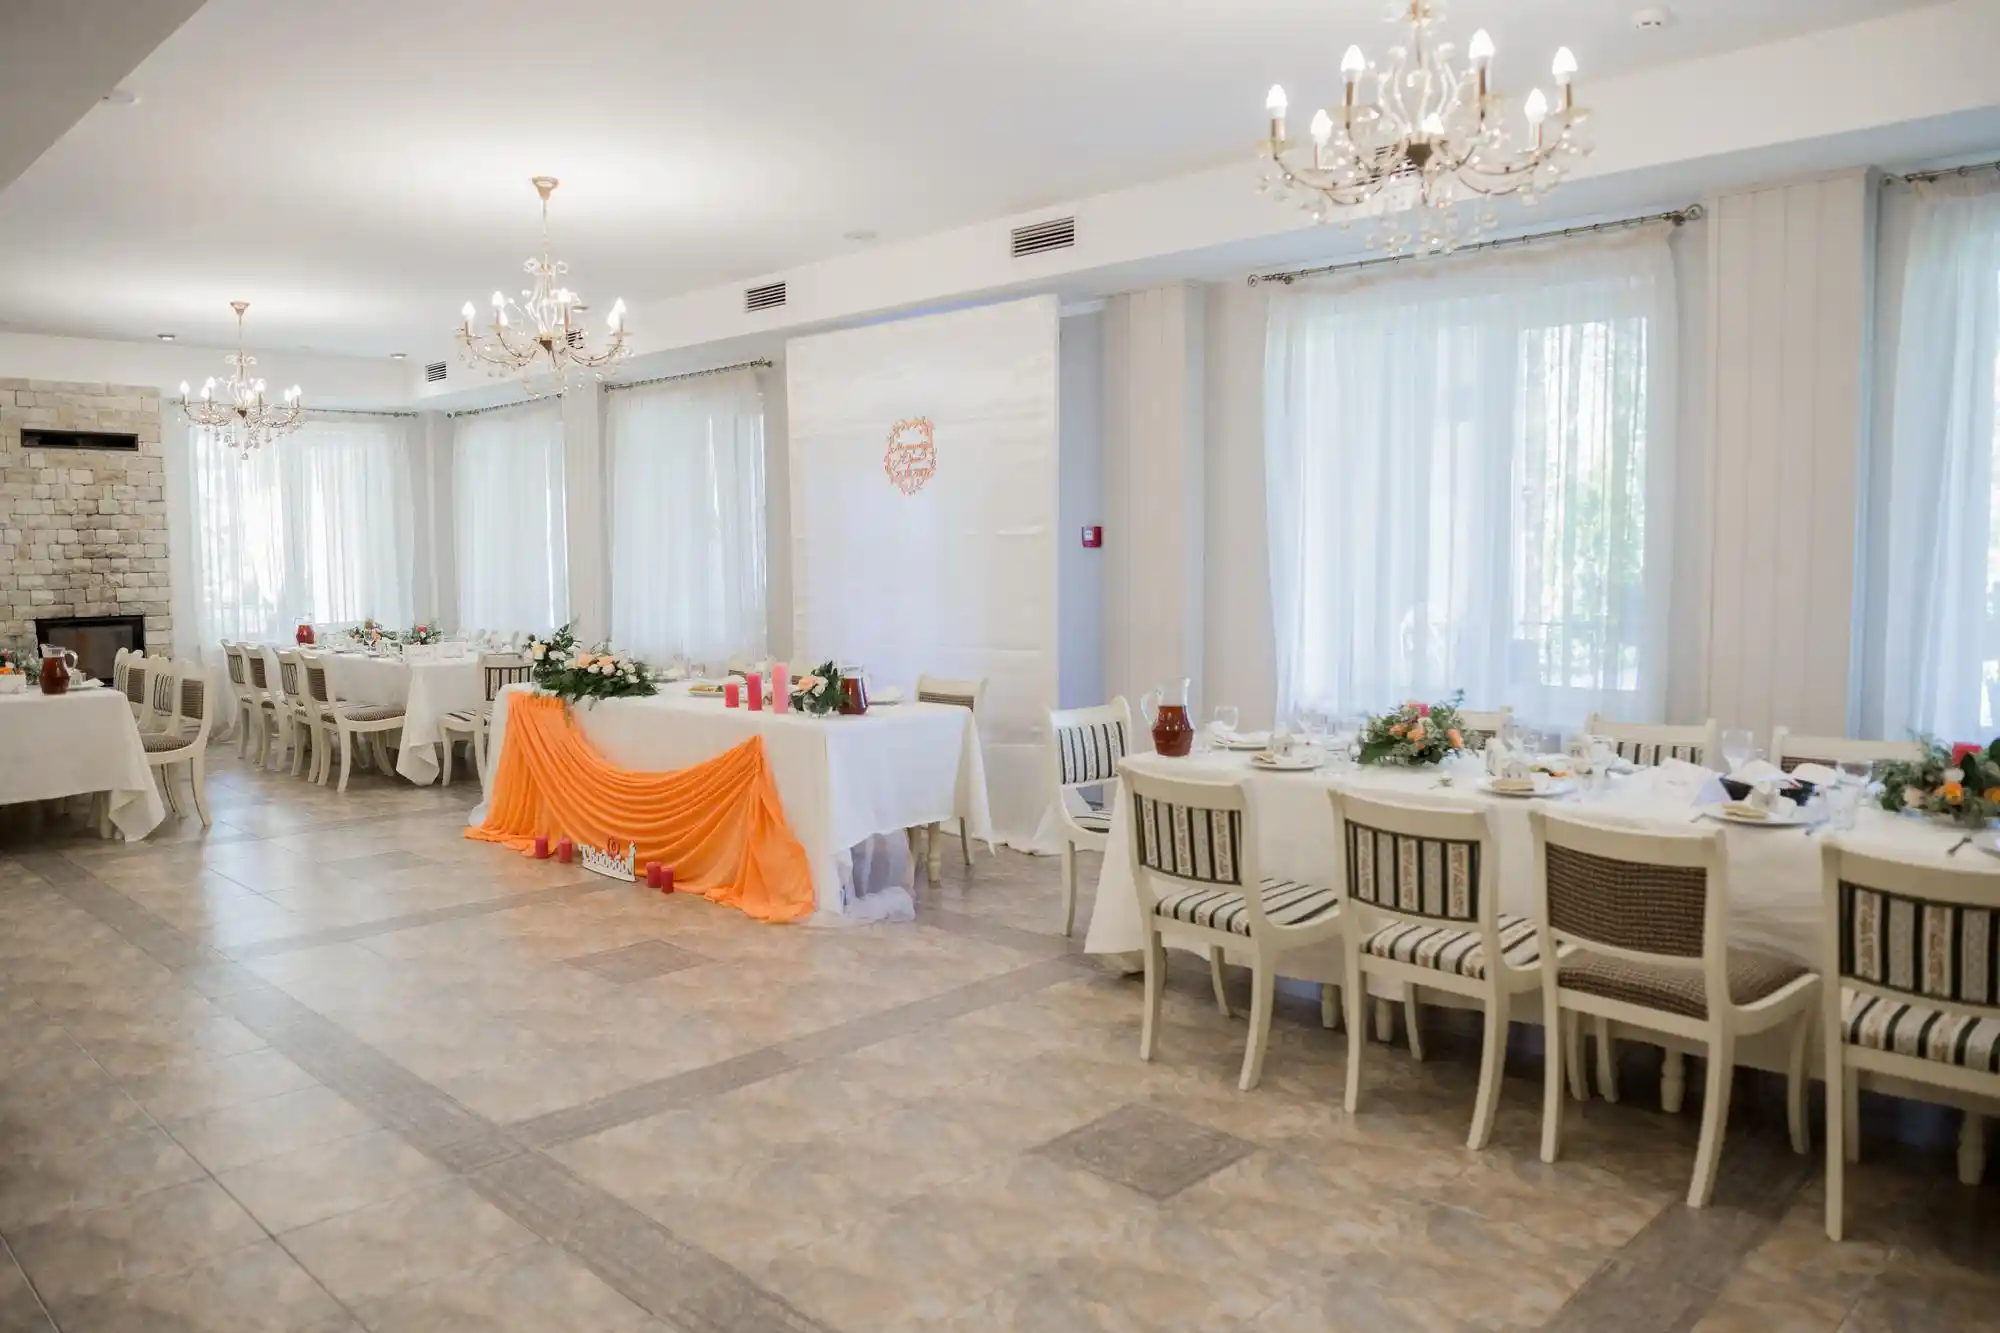 Regras de Salão de Festa em Condomínio: salão de festa com iluminação e mesas para convidados.